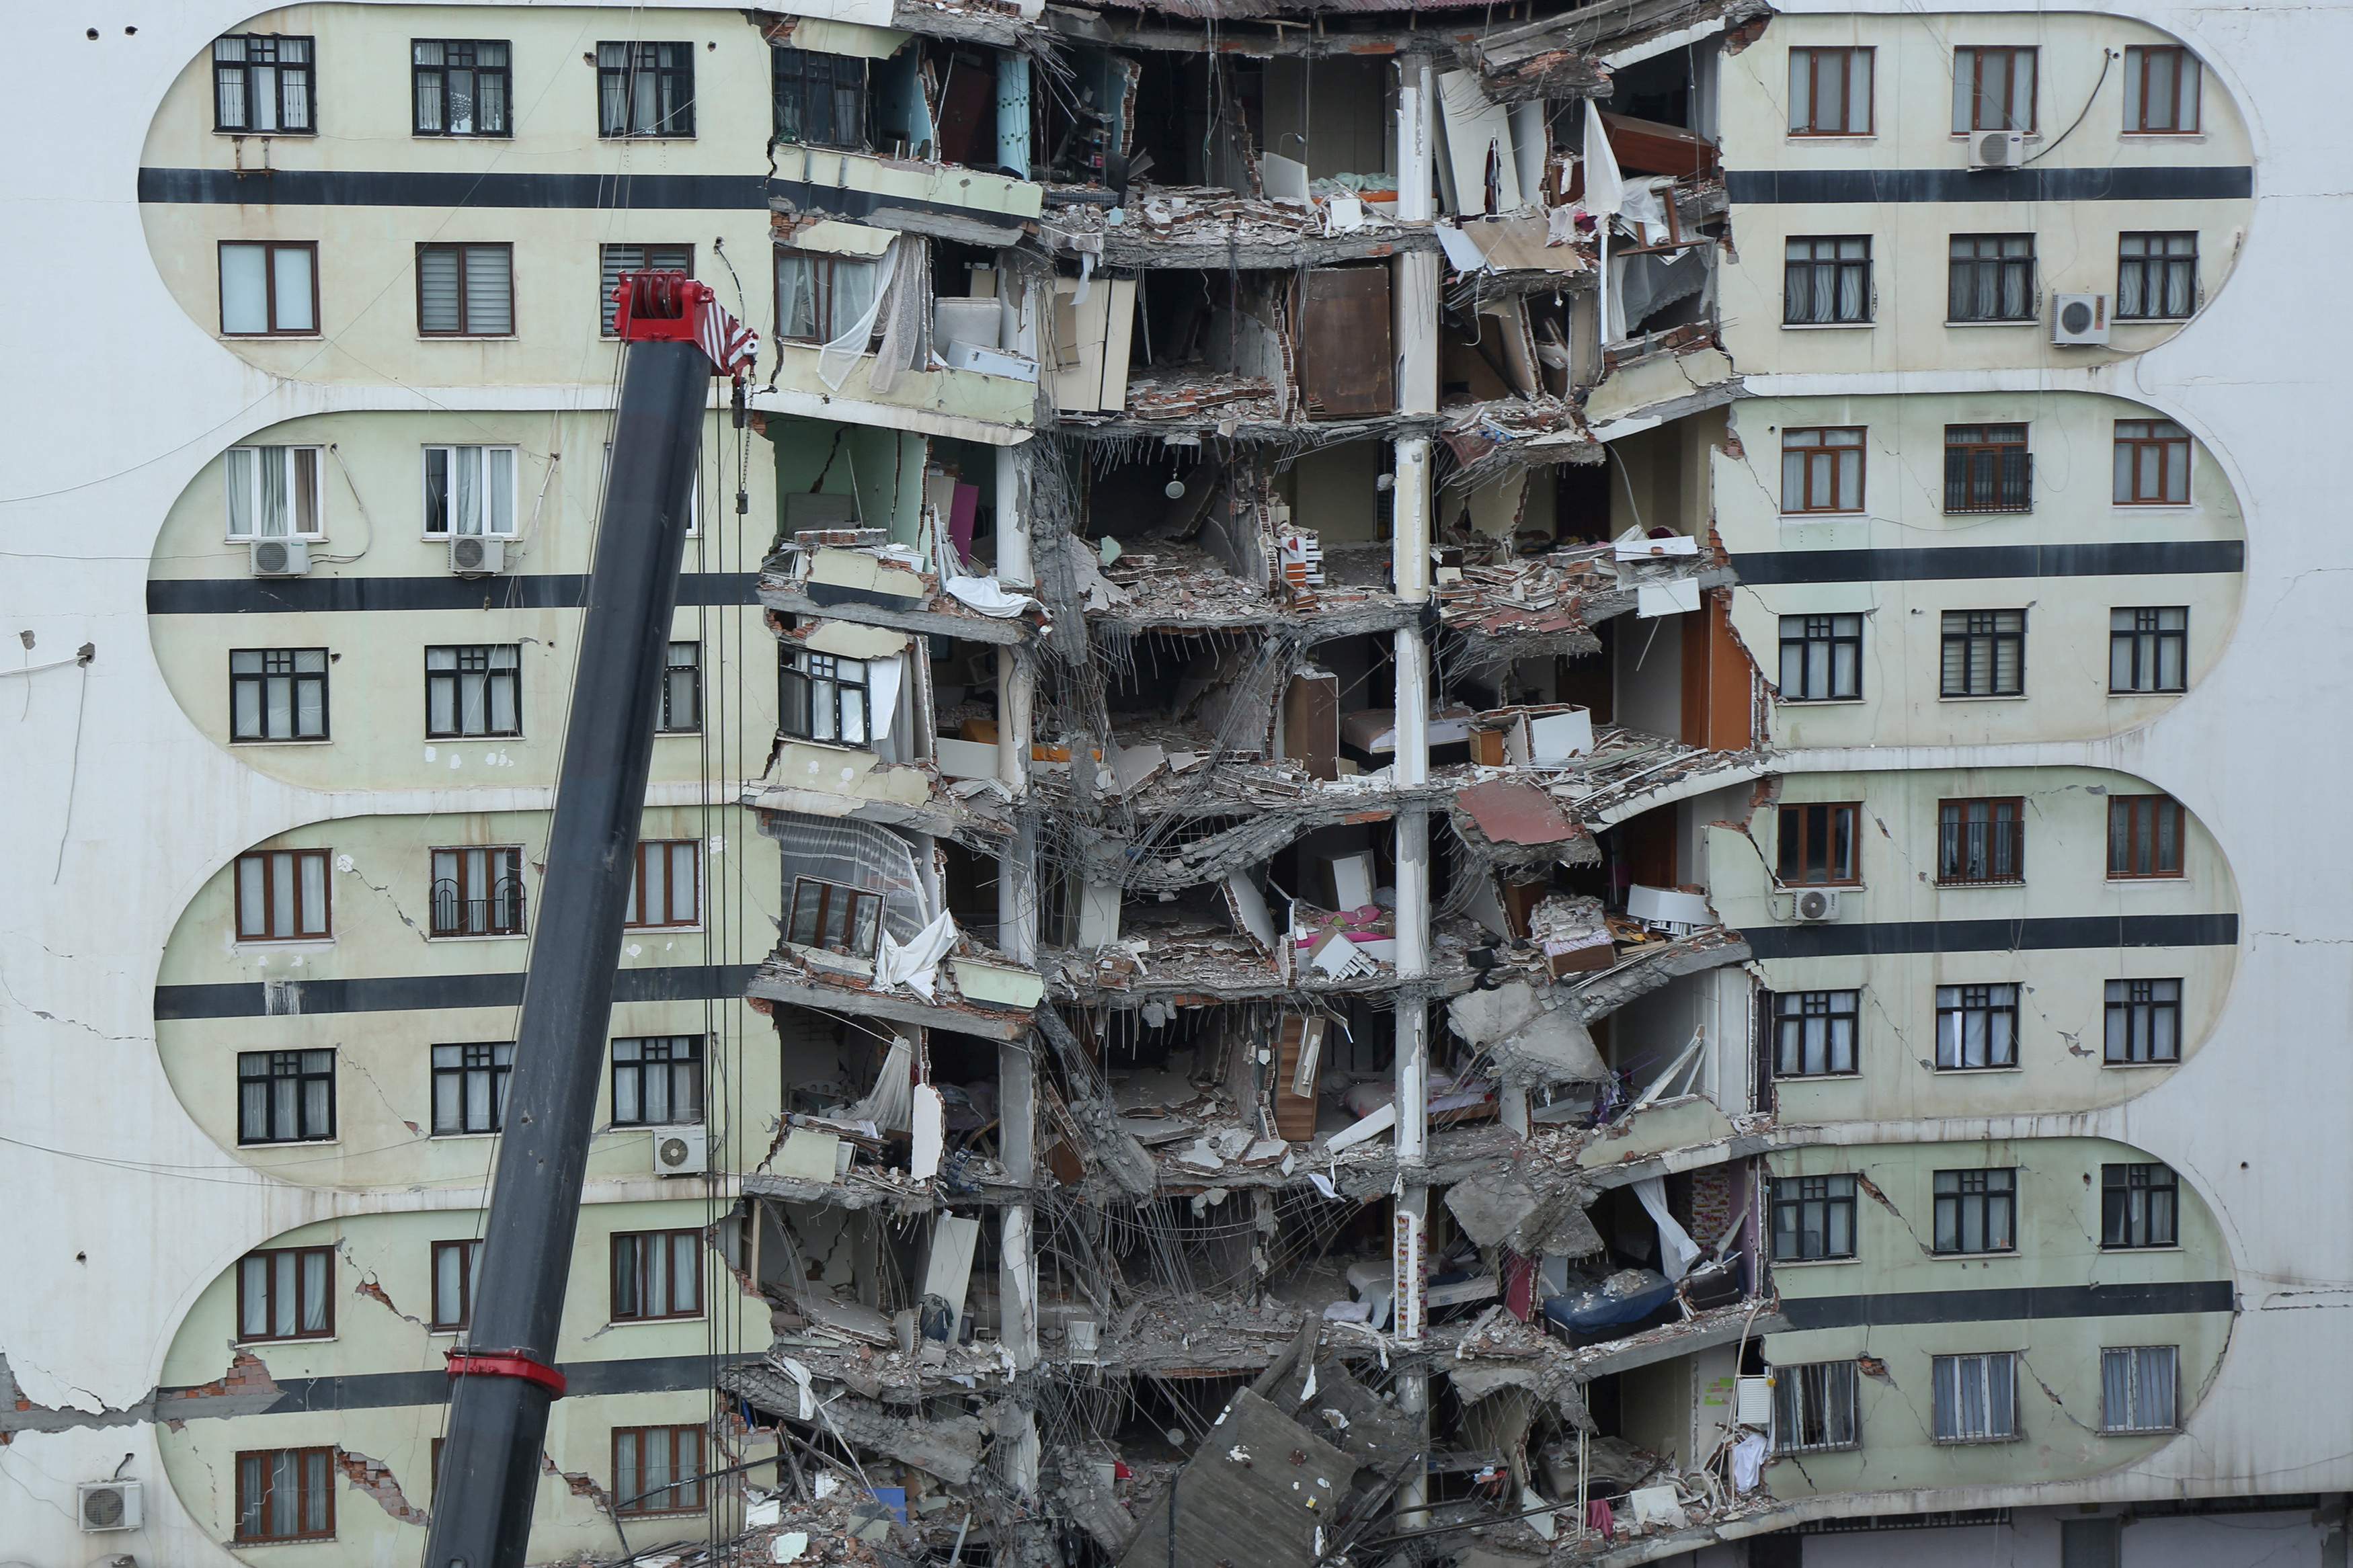 Una vista de un edificio dañado, luego de un terremoto en Diyarbakir, Turquía, 6 de febrero de 2023. REUTERS/Sertac Kayar